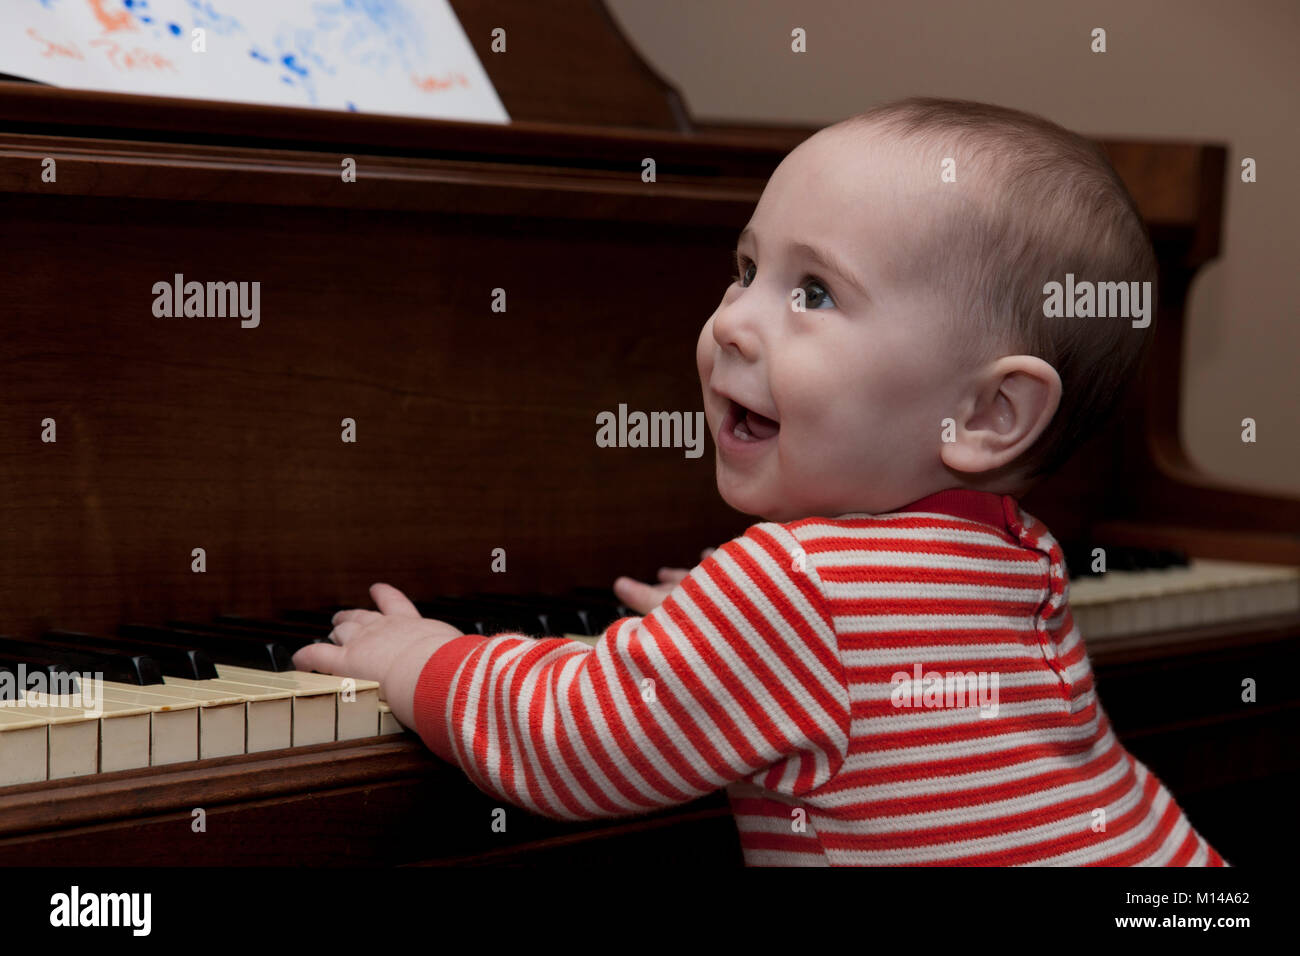 Ein glückliches Kind versucht, seine Hand auf die Tasten auf einem Klavier. Stockfoto